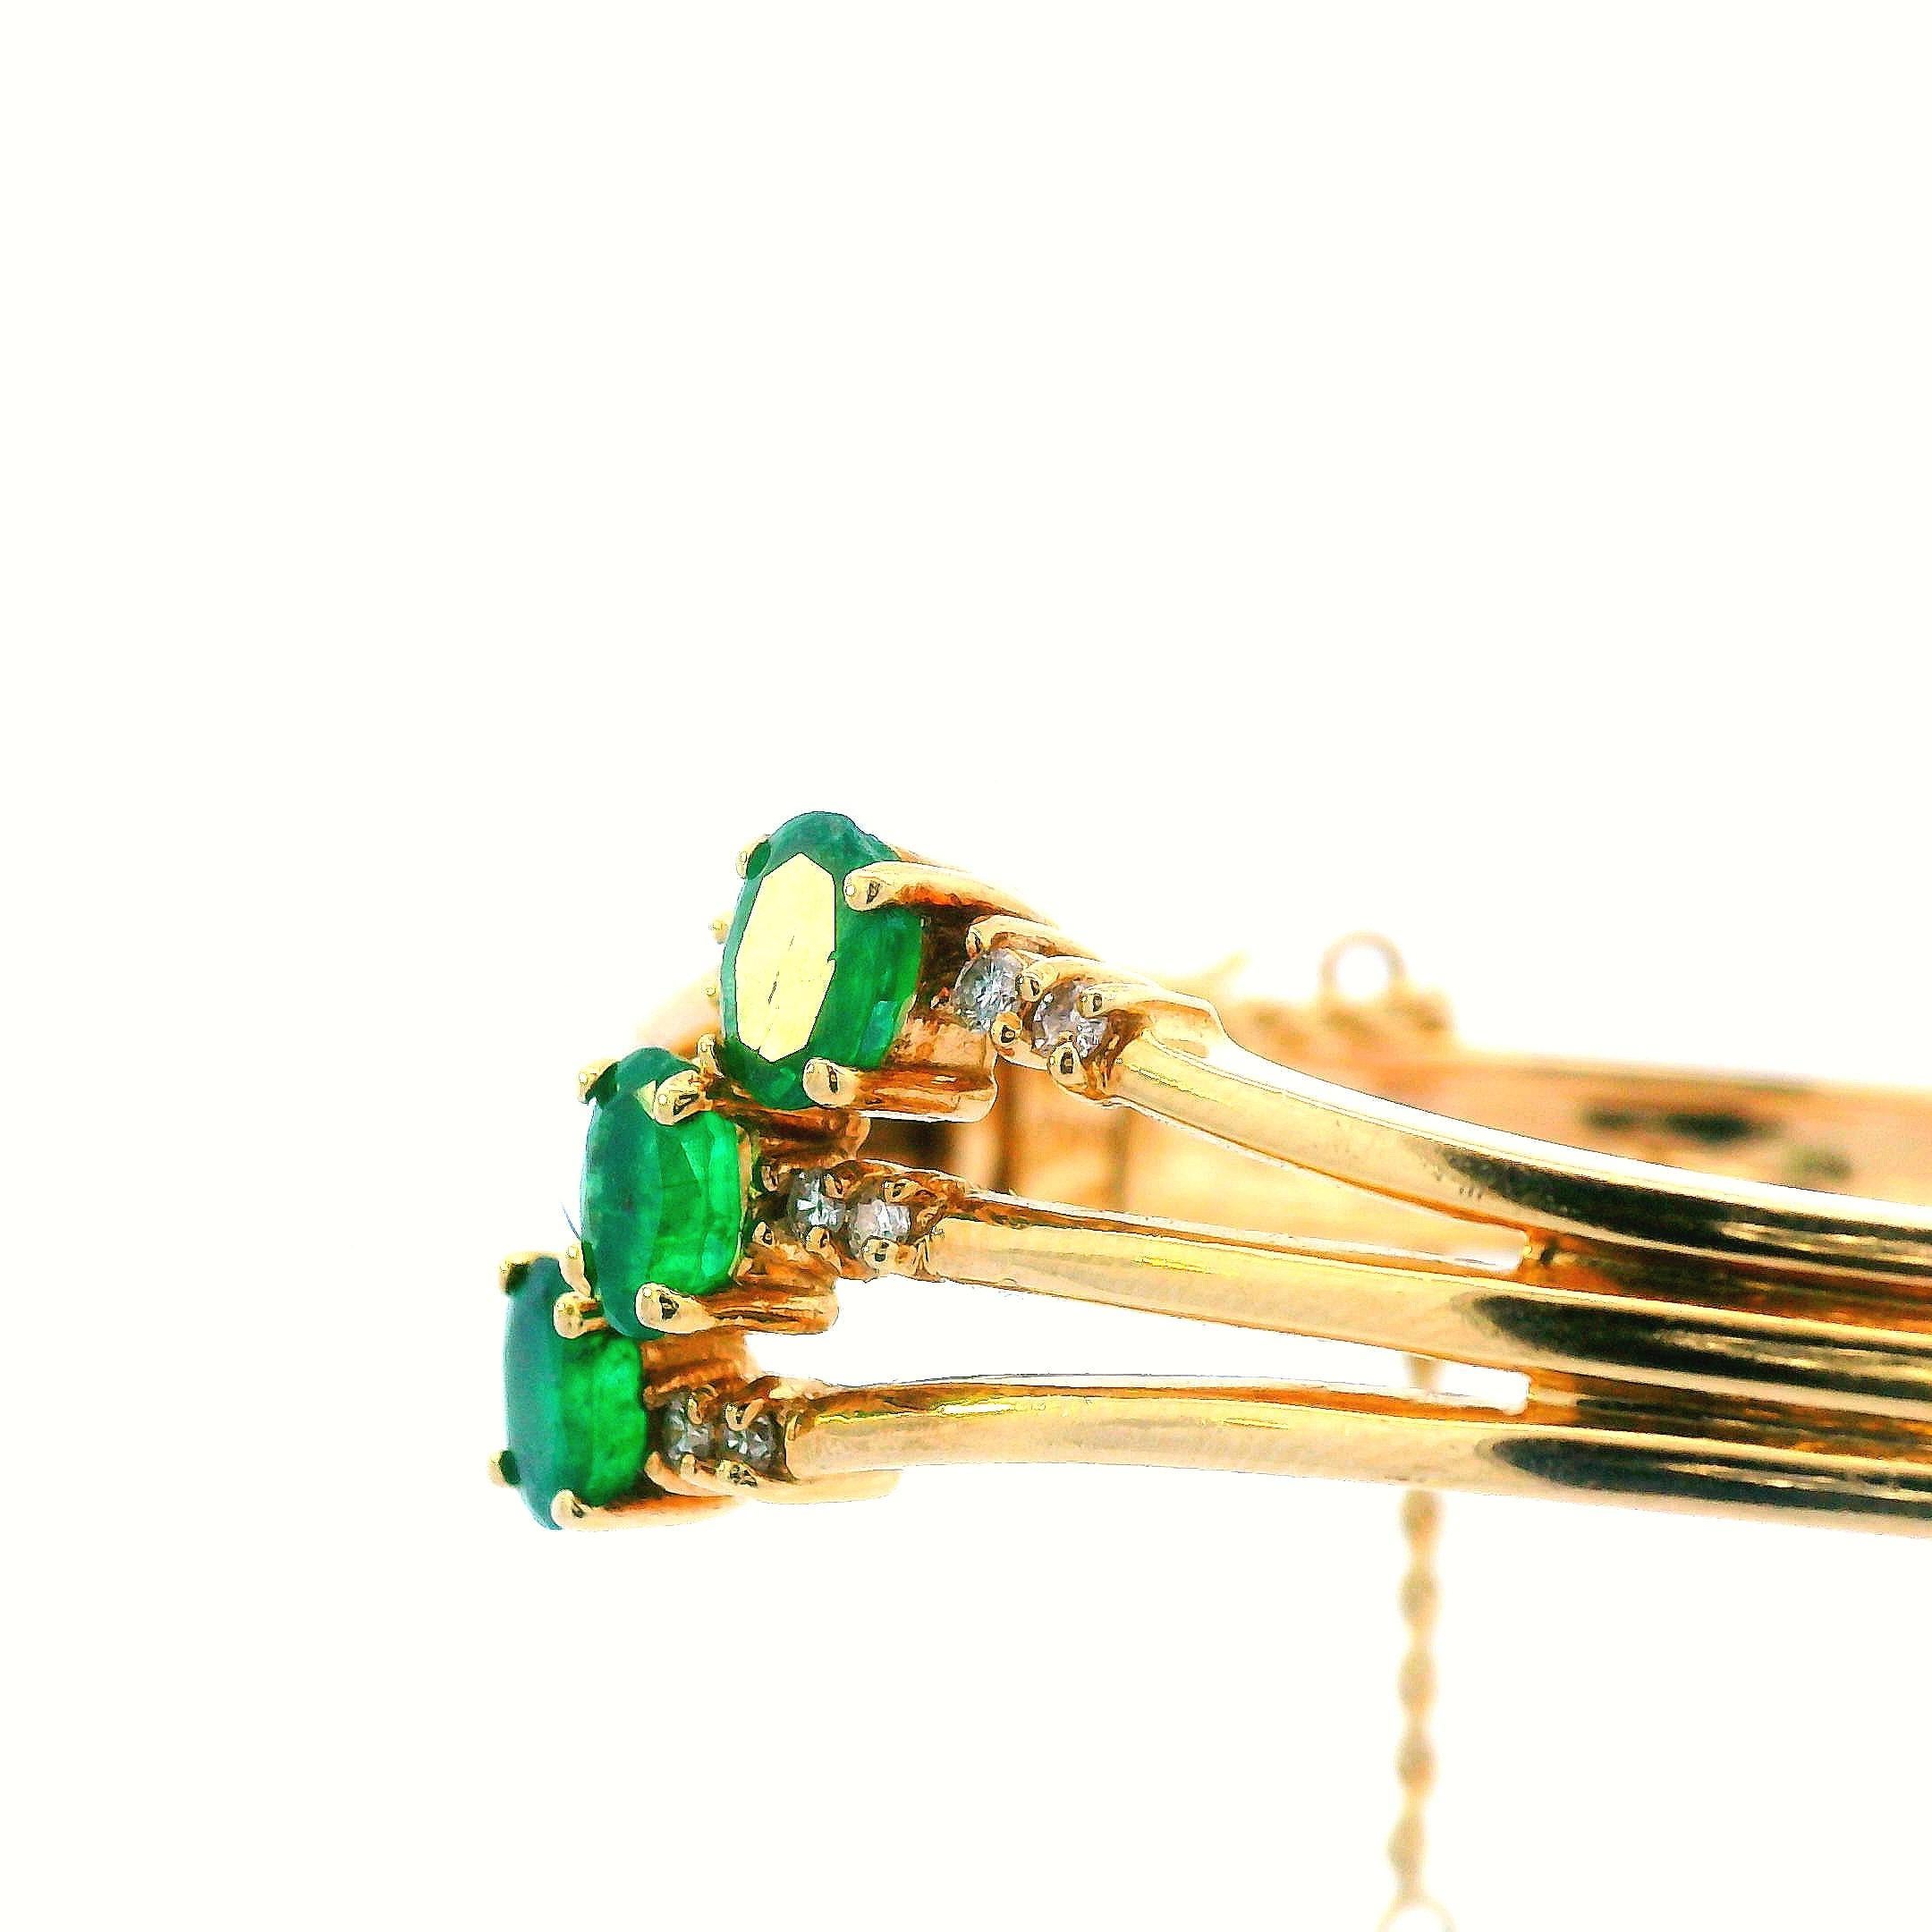 Ce charmant bracelet des années 1960 est réalisé en or jaune 14k et contient à la fois des émeraudes et des diamants. Le bracelet en or jaune 14k est composé de trois bandes d'or individuelles qui se rejoignent pour créer une bande solide. Ce thème